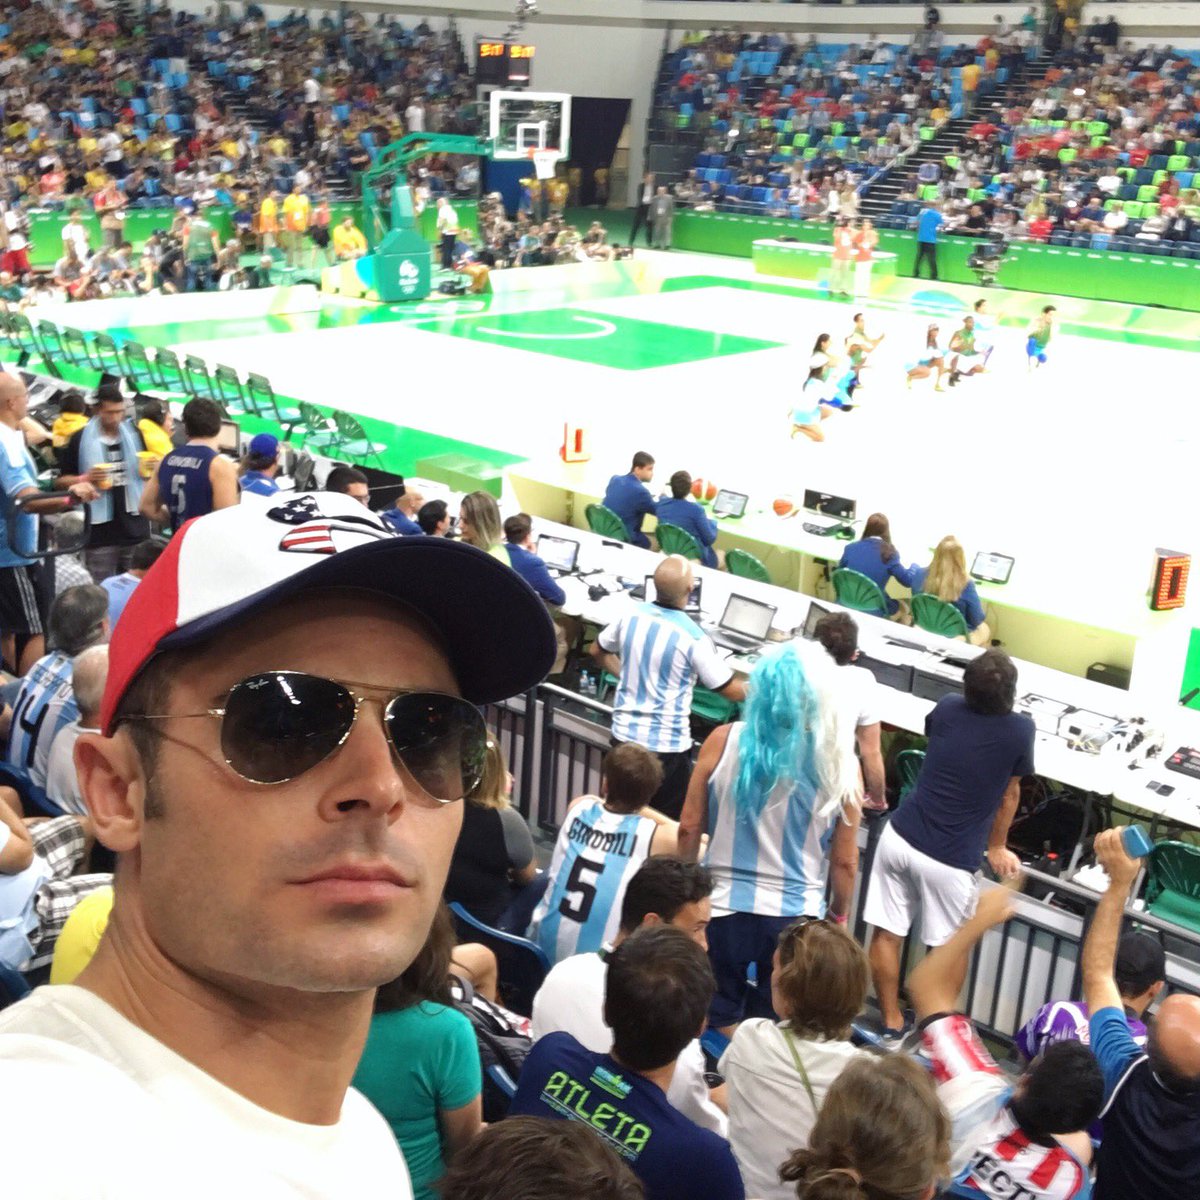 ???????????? all day #Rio2016 https://t.co/E0cuJOSlIA